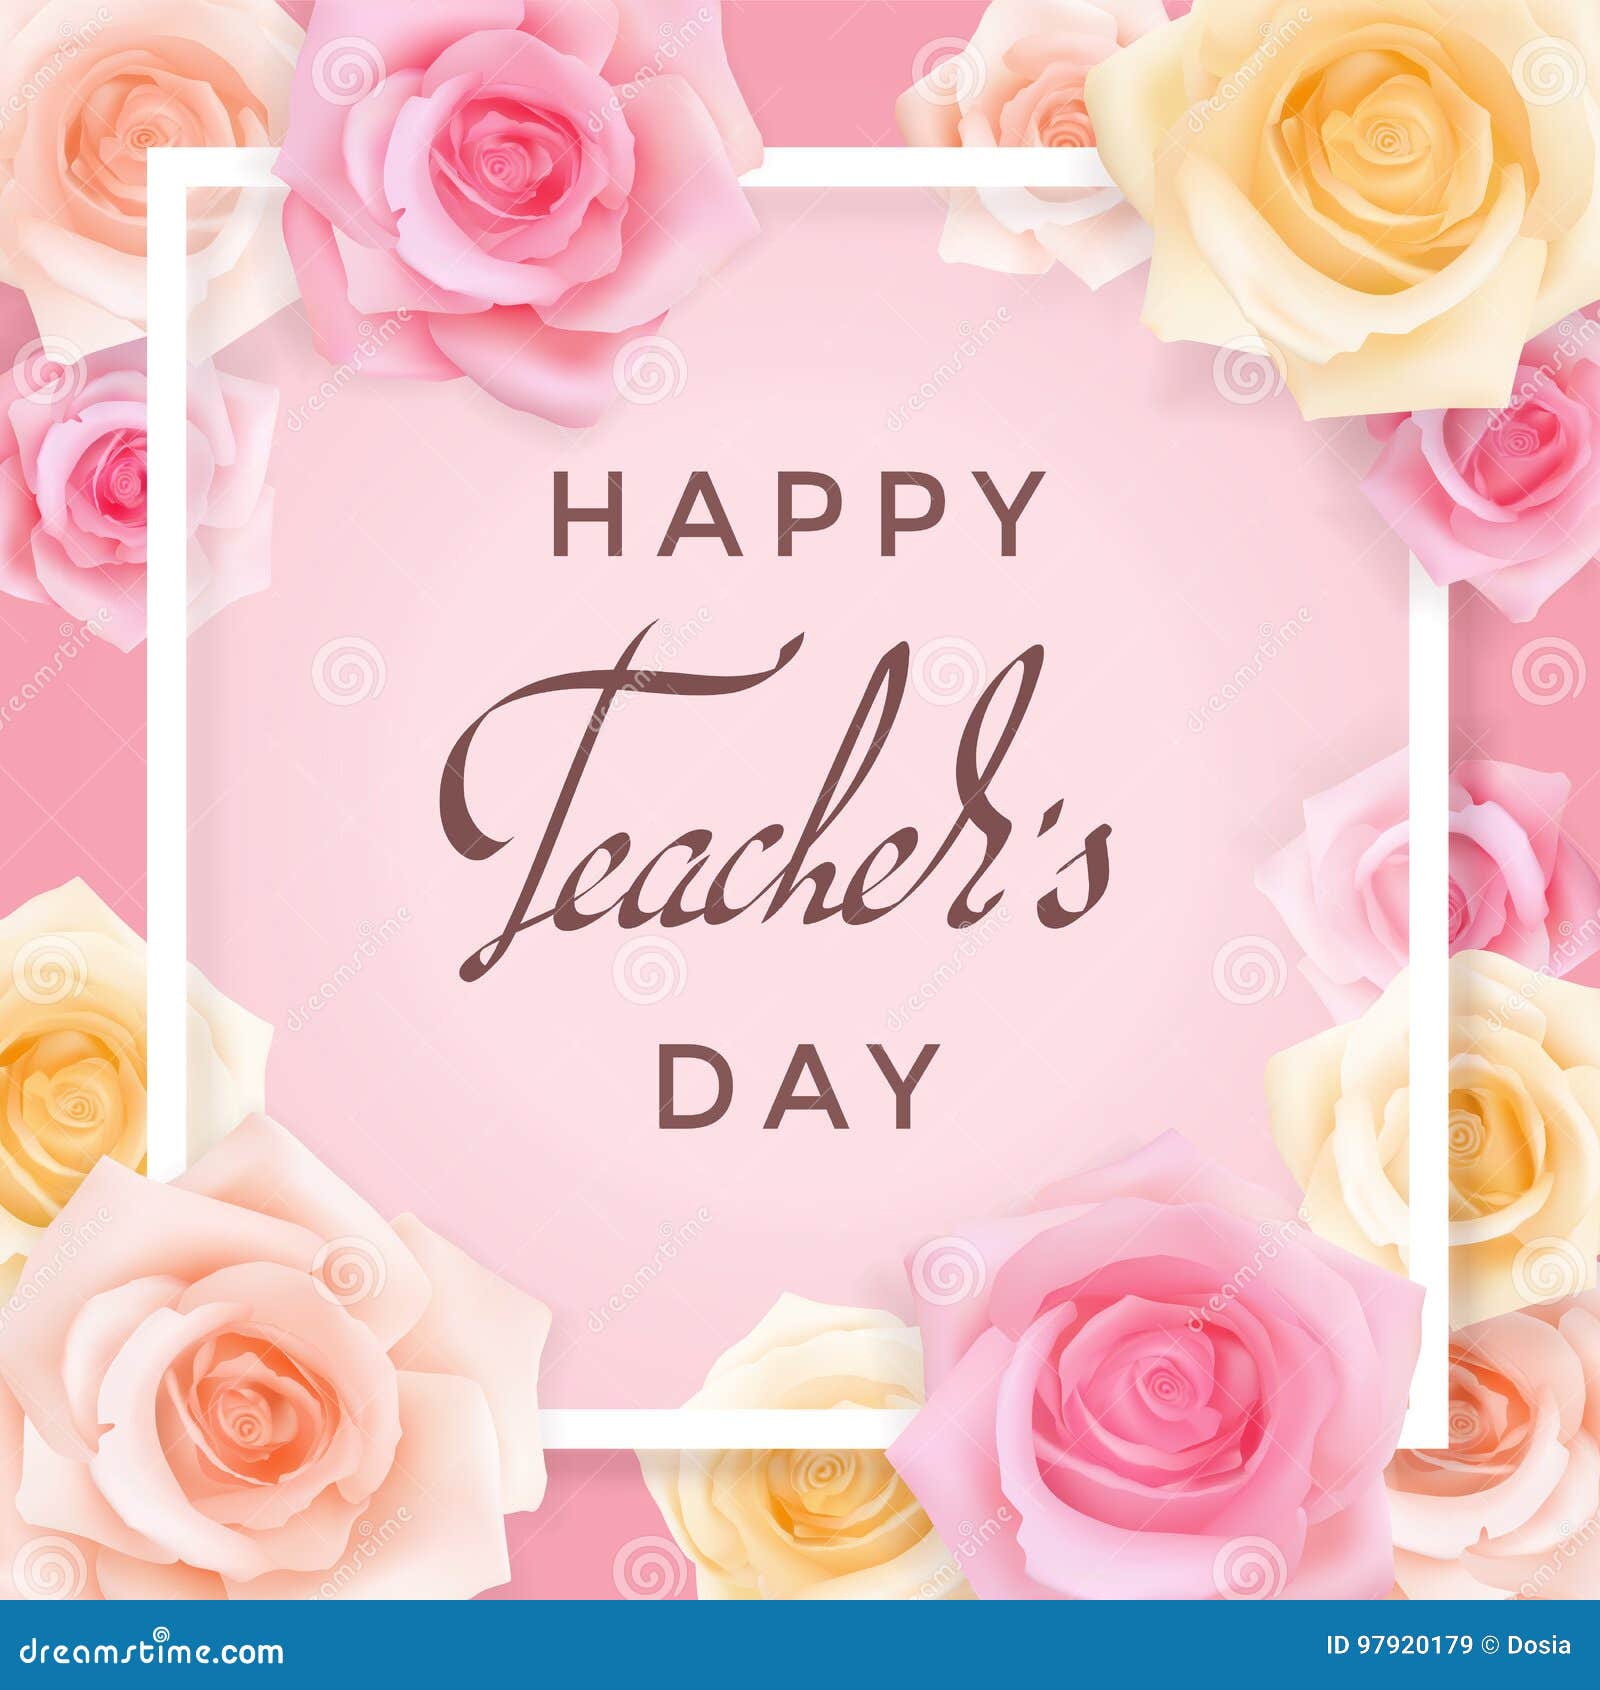 teachers-day-card-with-roses-cartoon-vector-cartoondealer-97920153